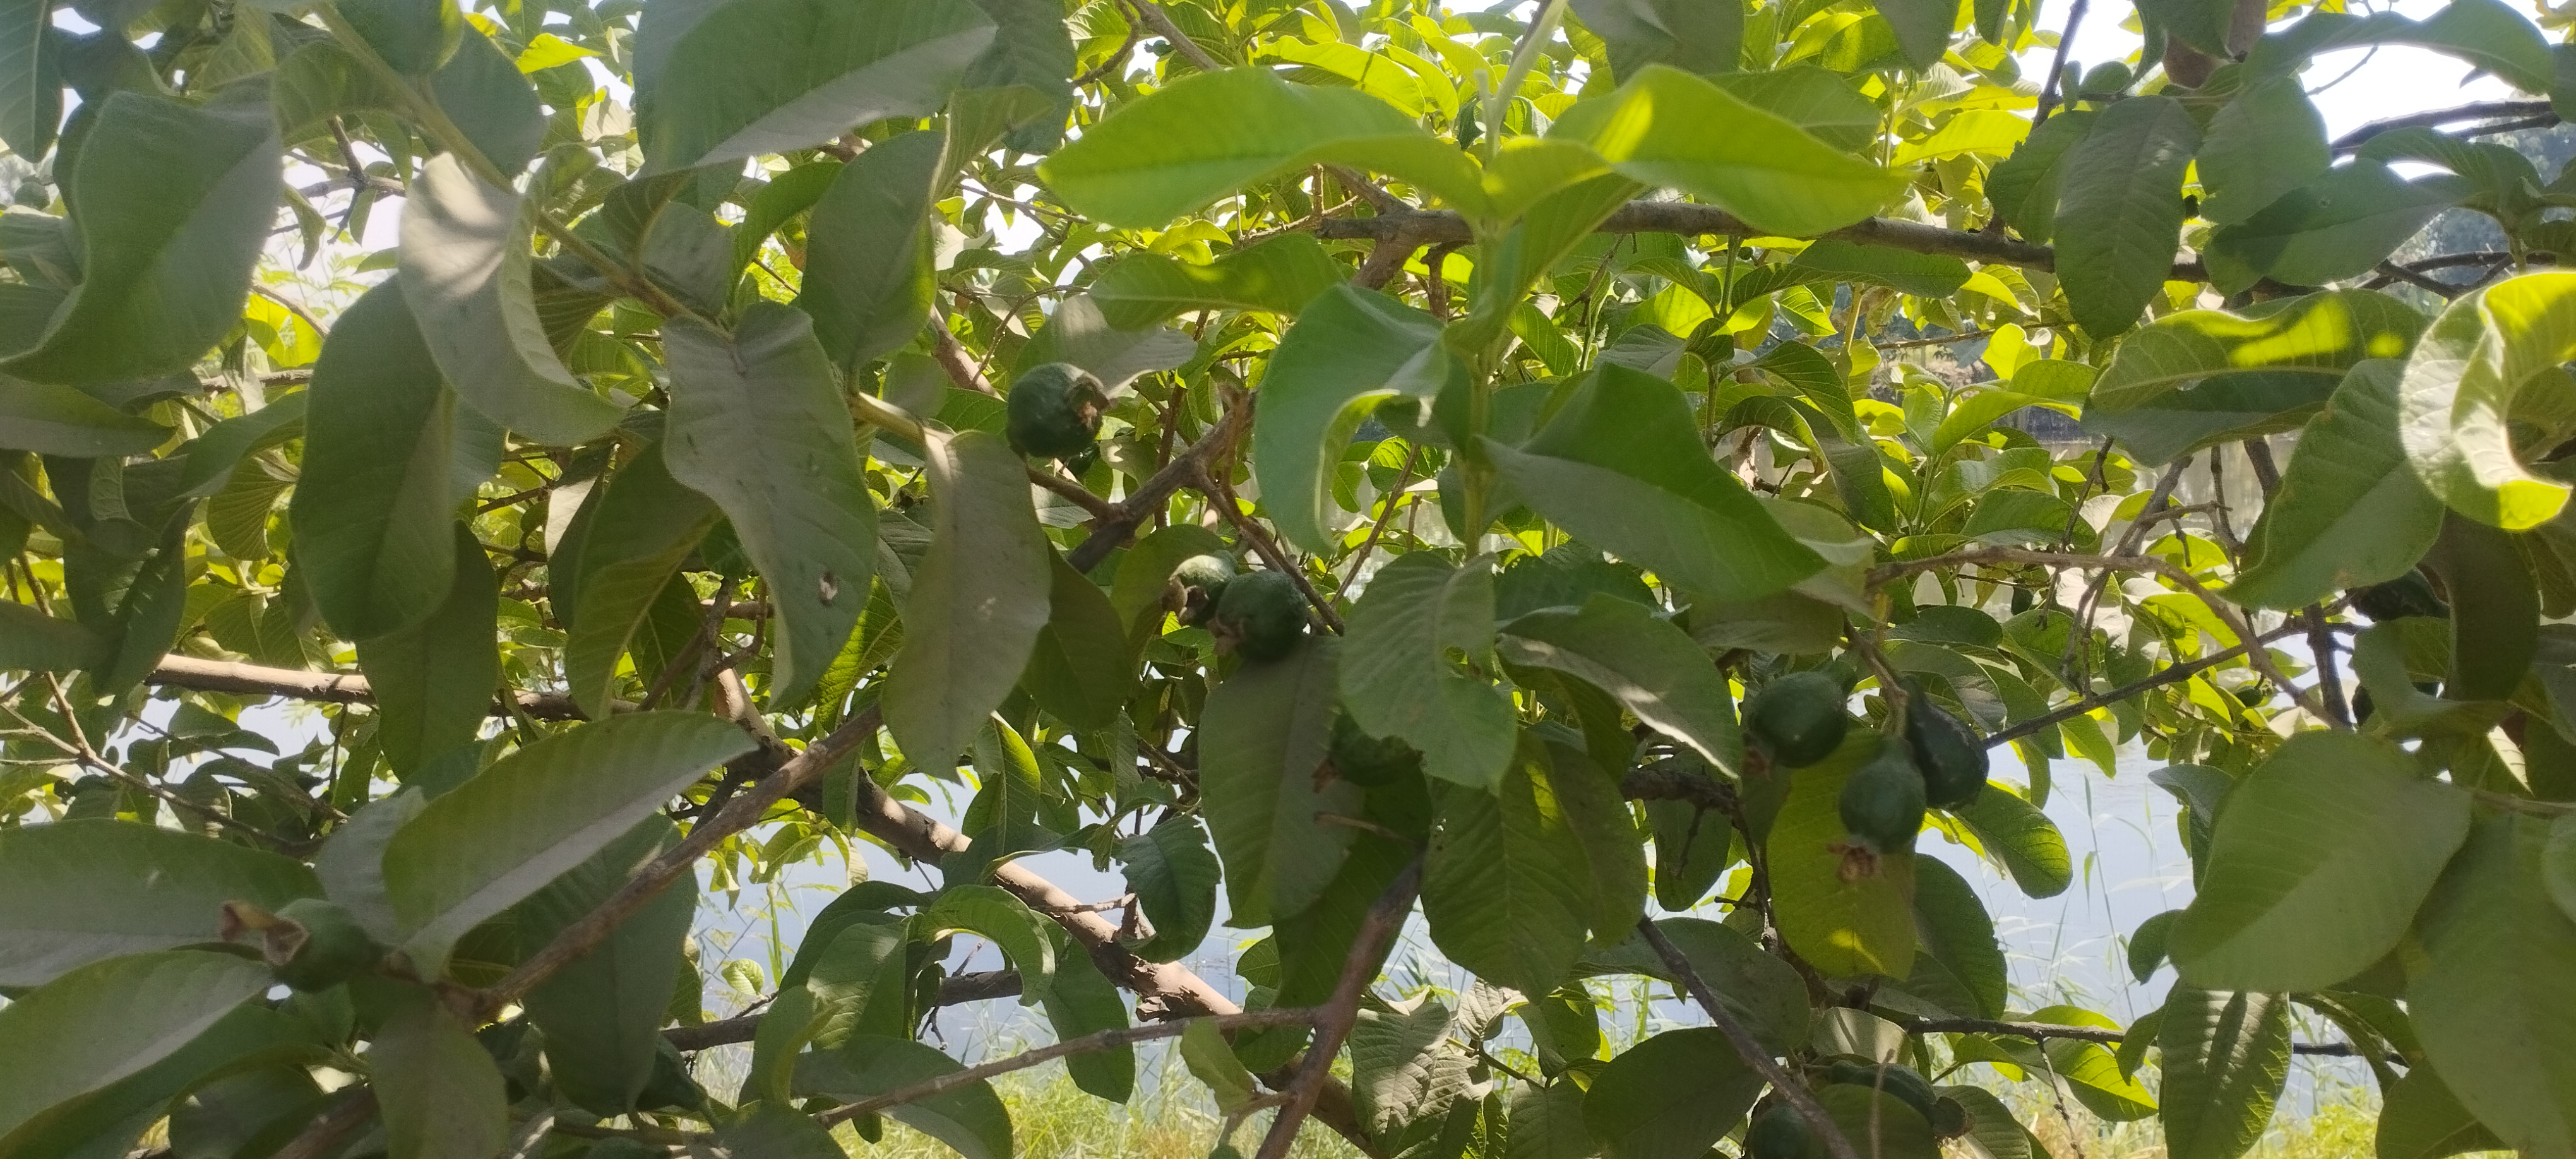 أشجار الجوافة تزين مزارع المنيا (1)